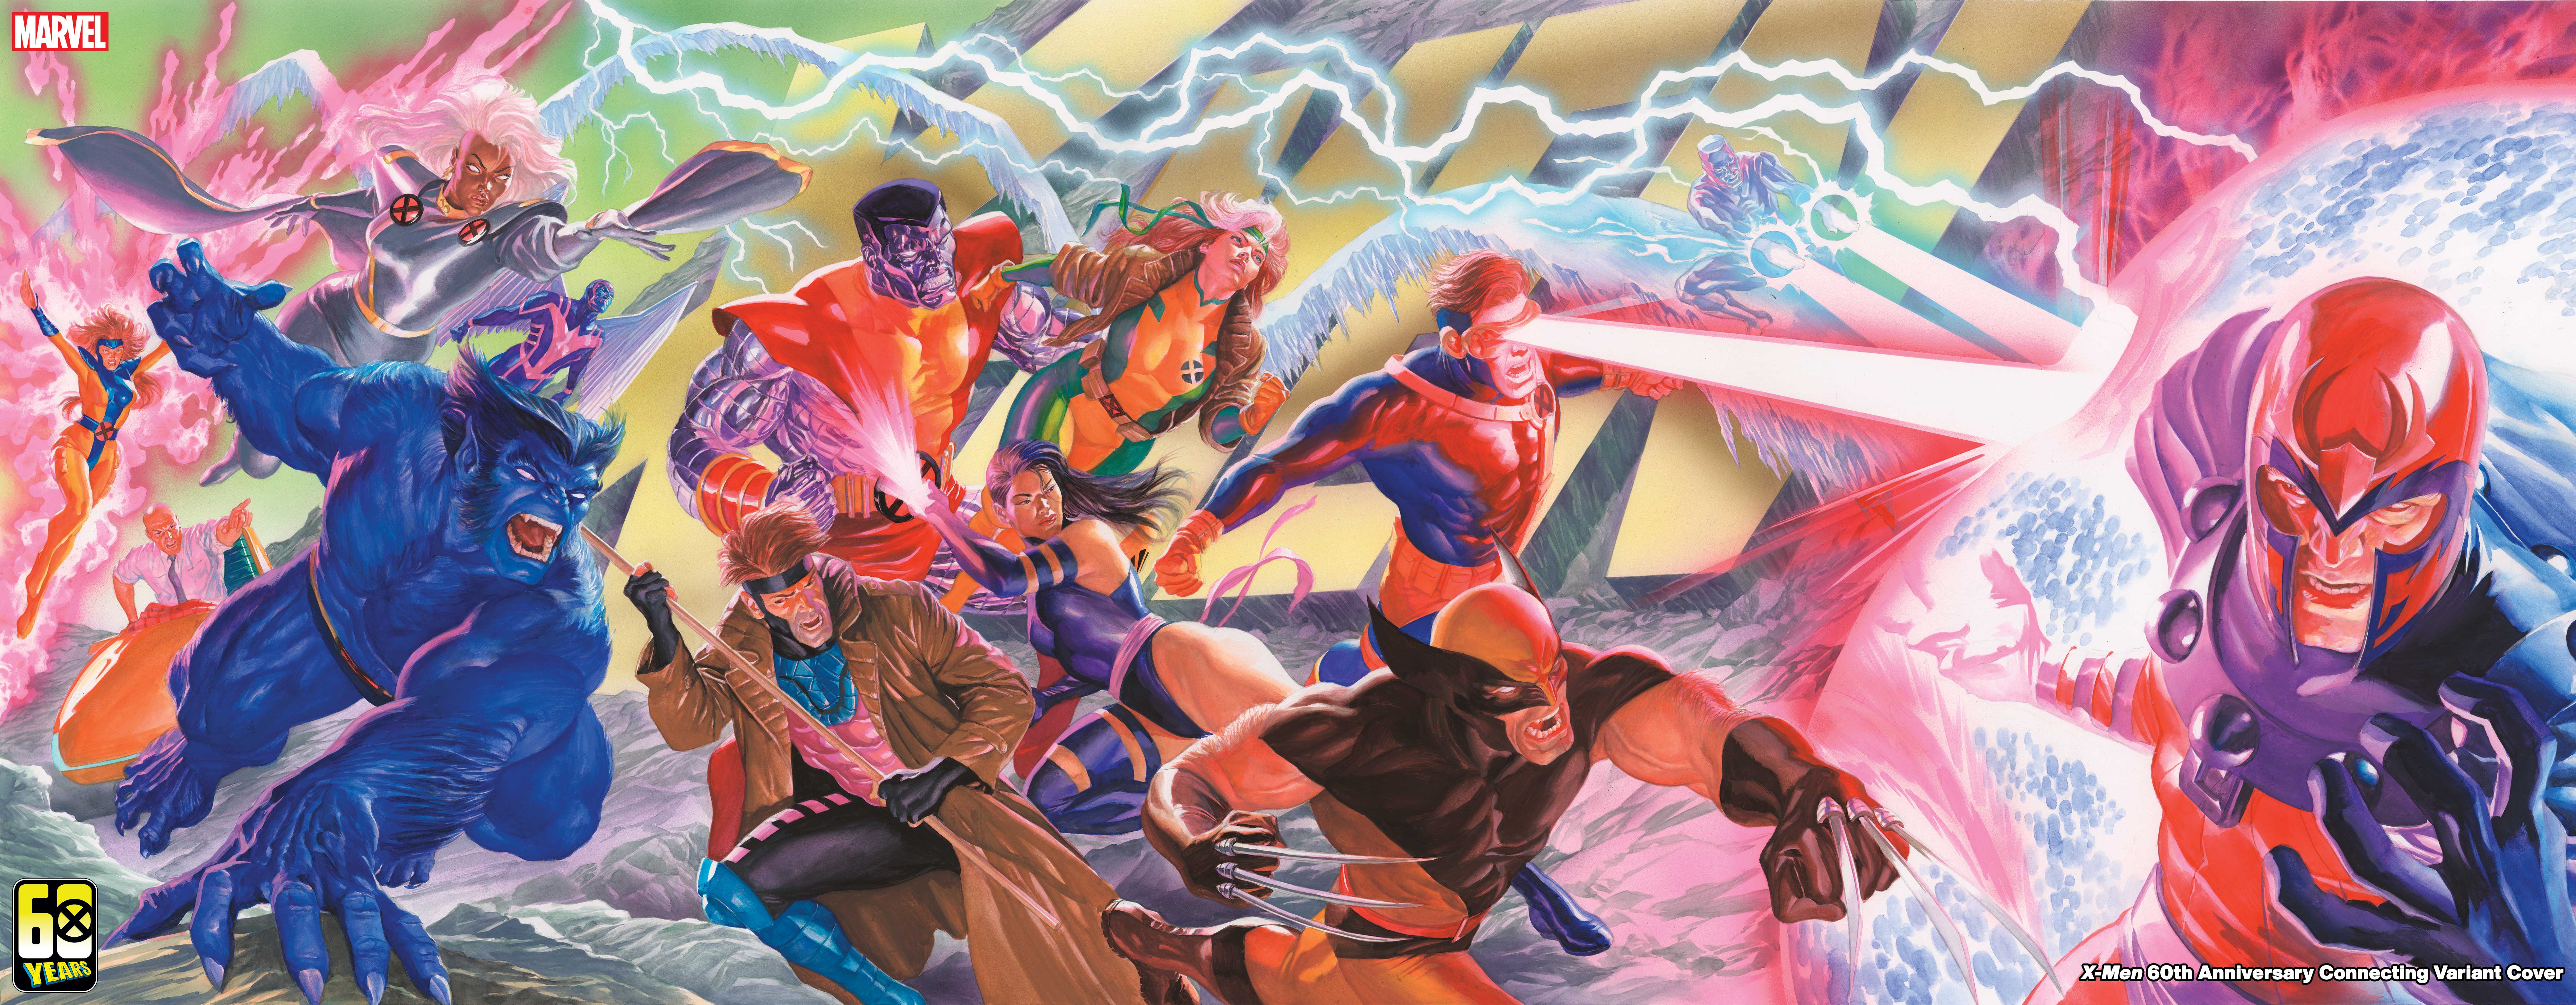 Marvel Comics X Men Magneto Superhero Comics Comic Art Wolverine Cyclops Jean Grey Rogue X Men Storm 8025x3132